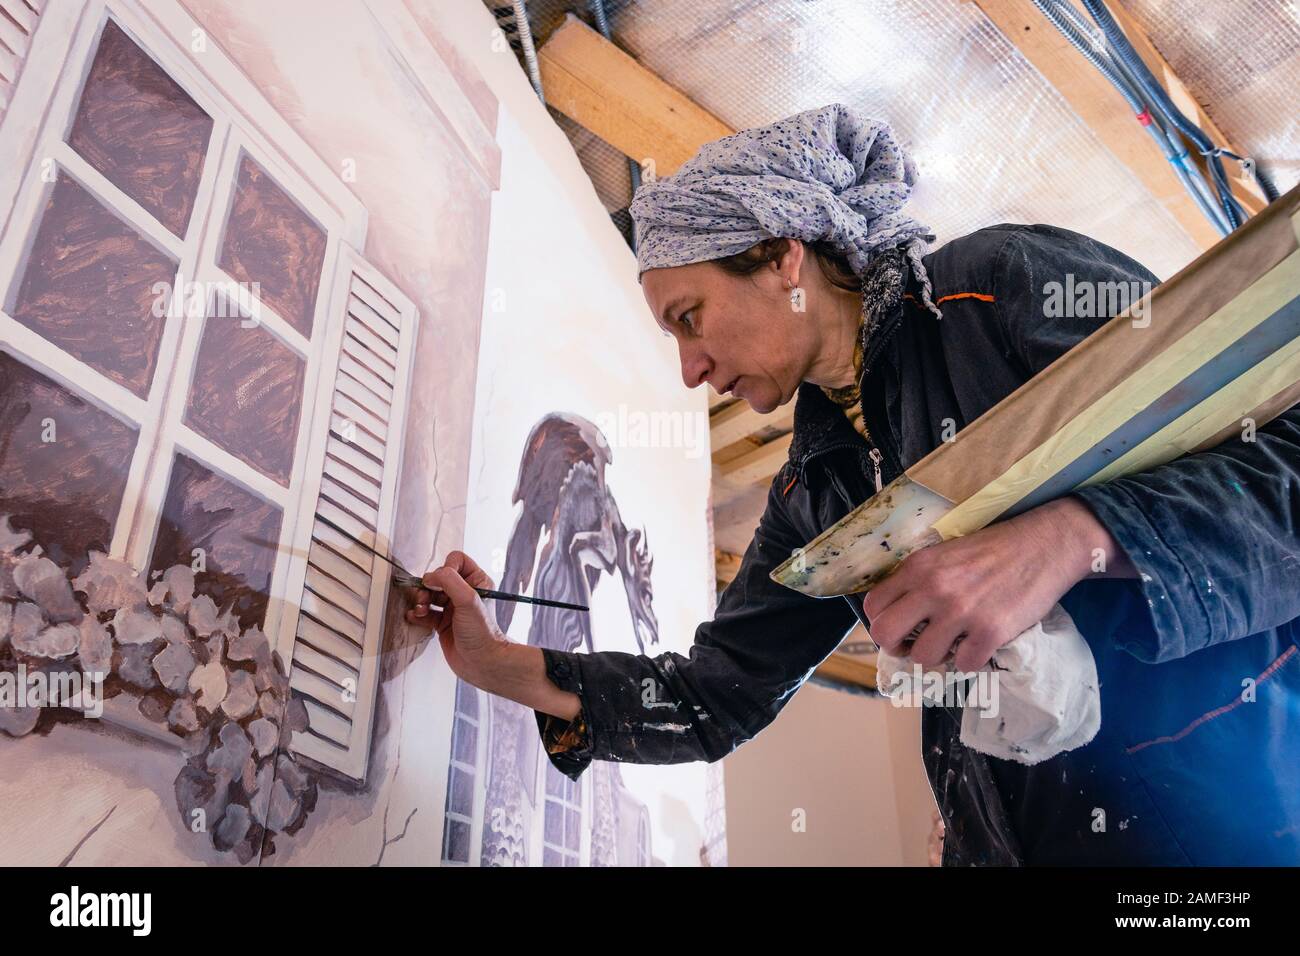 Frauenkünstlerin malt eine Wand in einem Wohnzimmer. Das Wandbild widmet sich den Eindrücken von Paris. Der Autor zeichnet ein Detail - Fensterläden. Untere Ansicht. Stockfoto